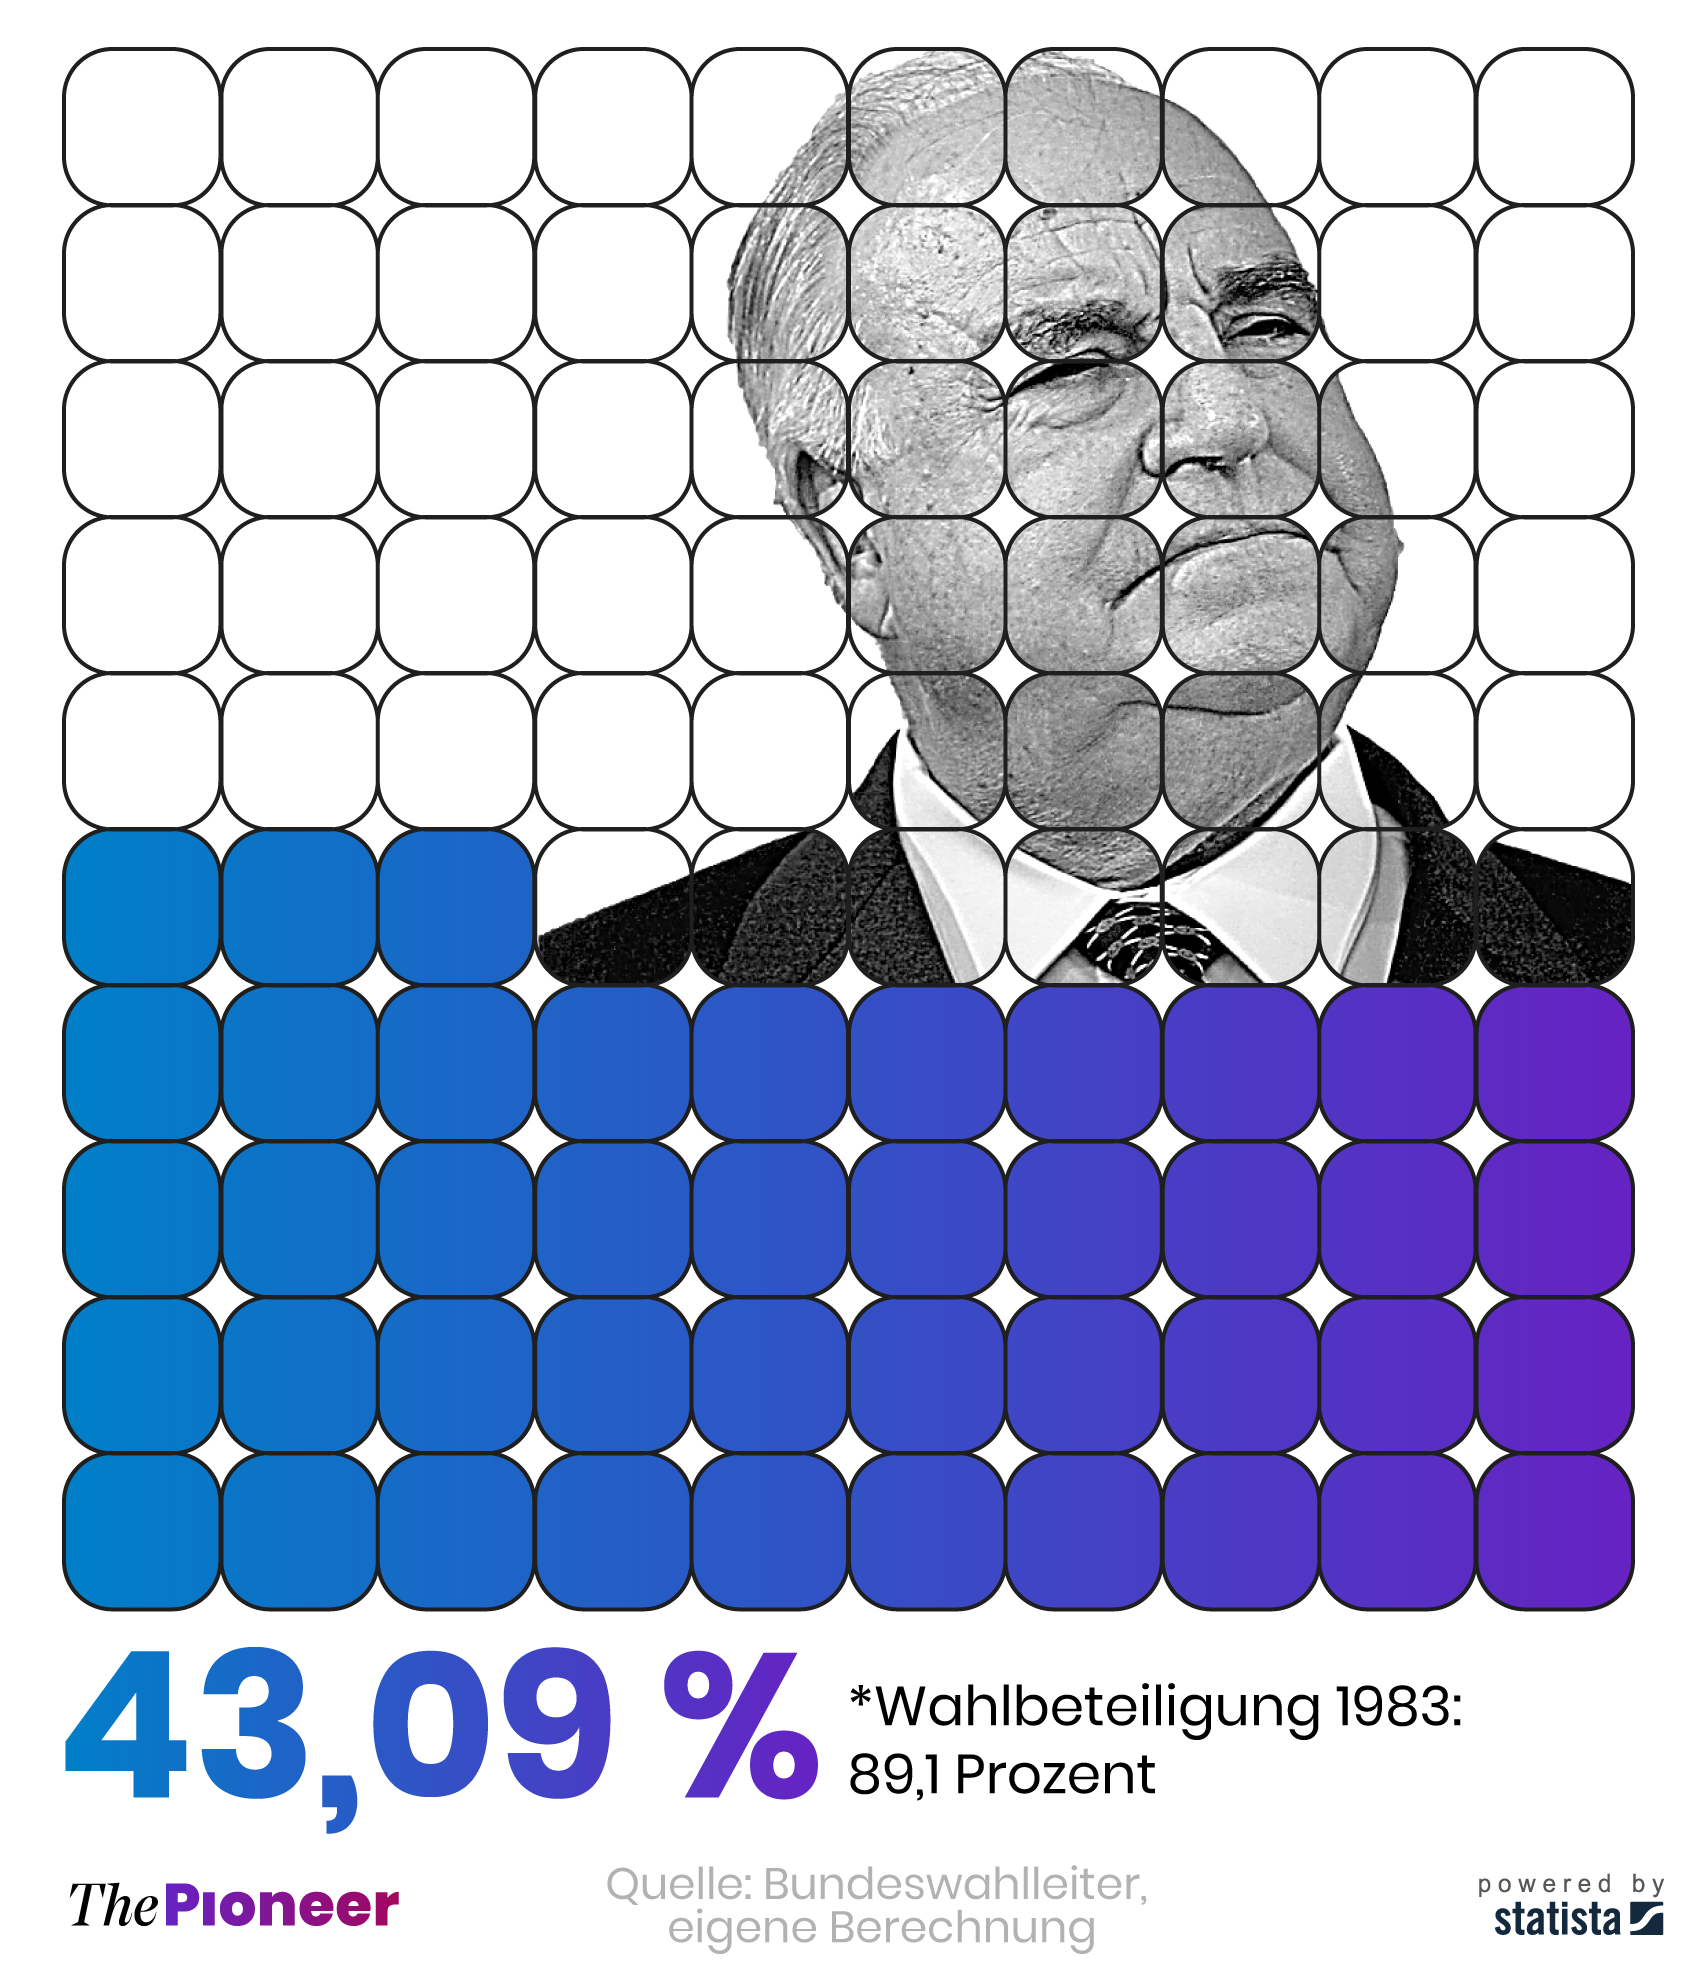 Bundestagswahlergebnis der Union zur Kohl-Wahl 1983 unter Einbeziehung aller Wahlberechtigten*, in Prozent